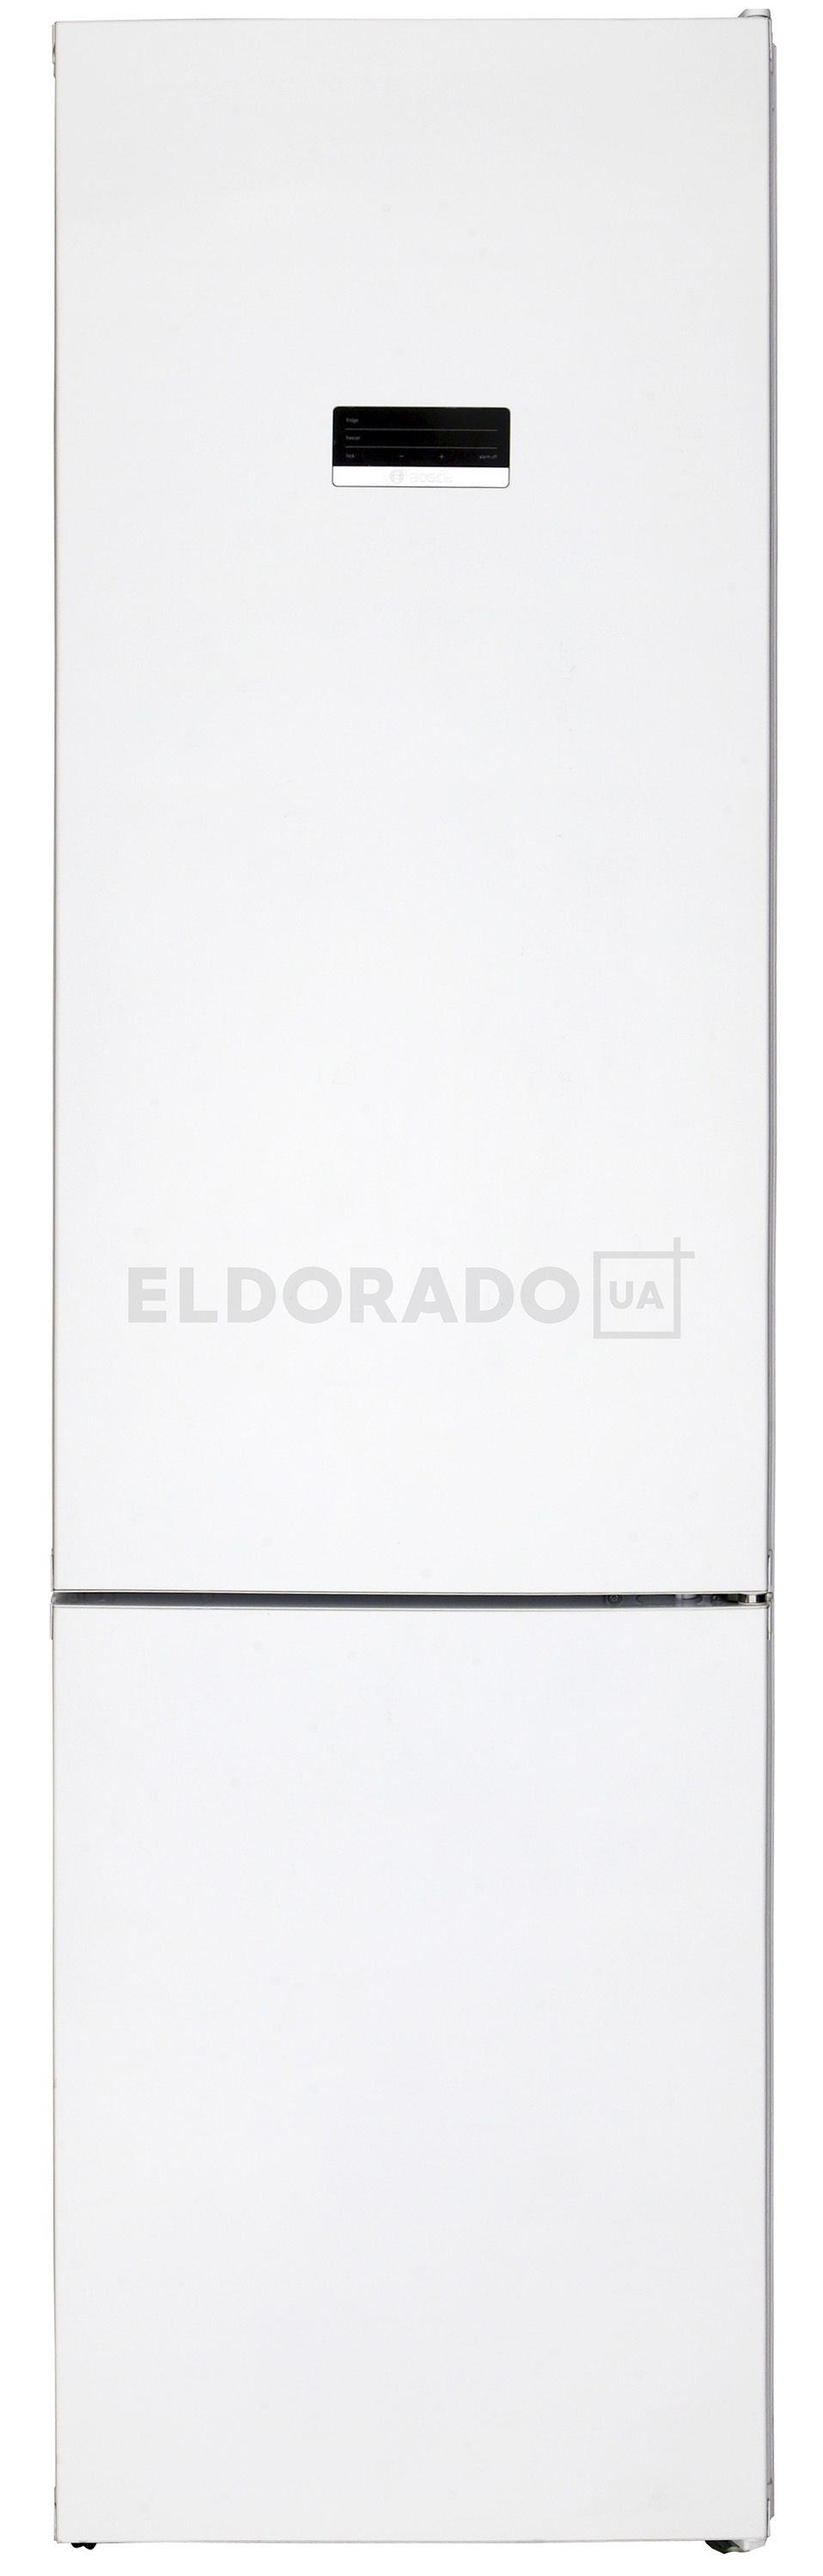 Акция на Холодильник BOSCH KGN 39 XW 326 от Eldorado